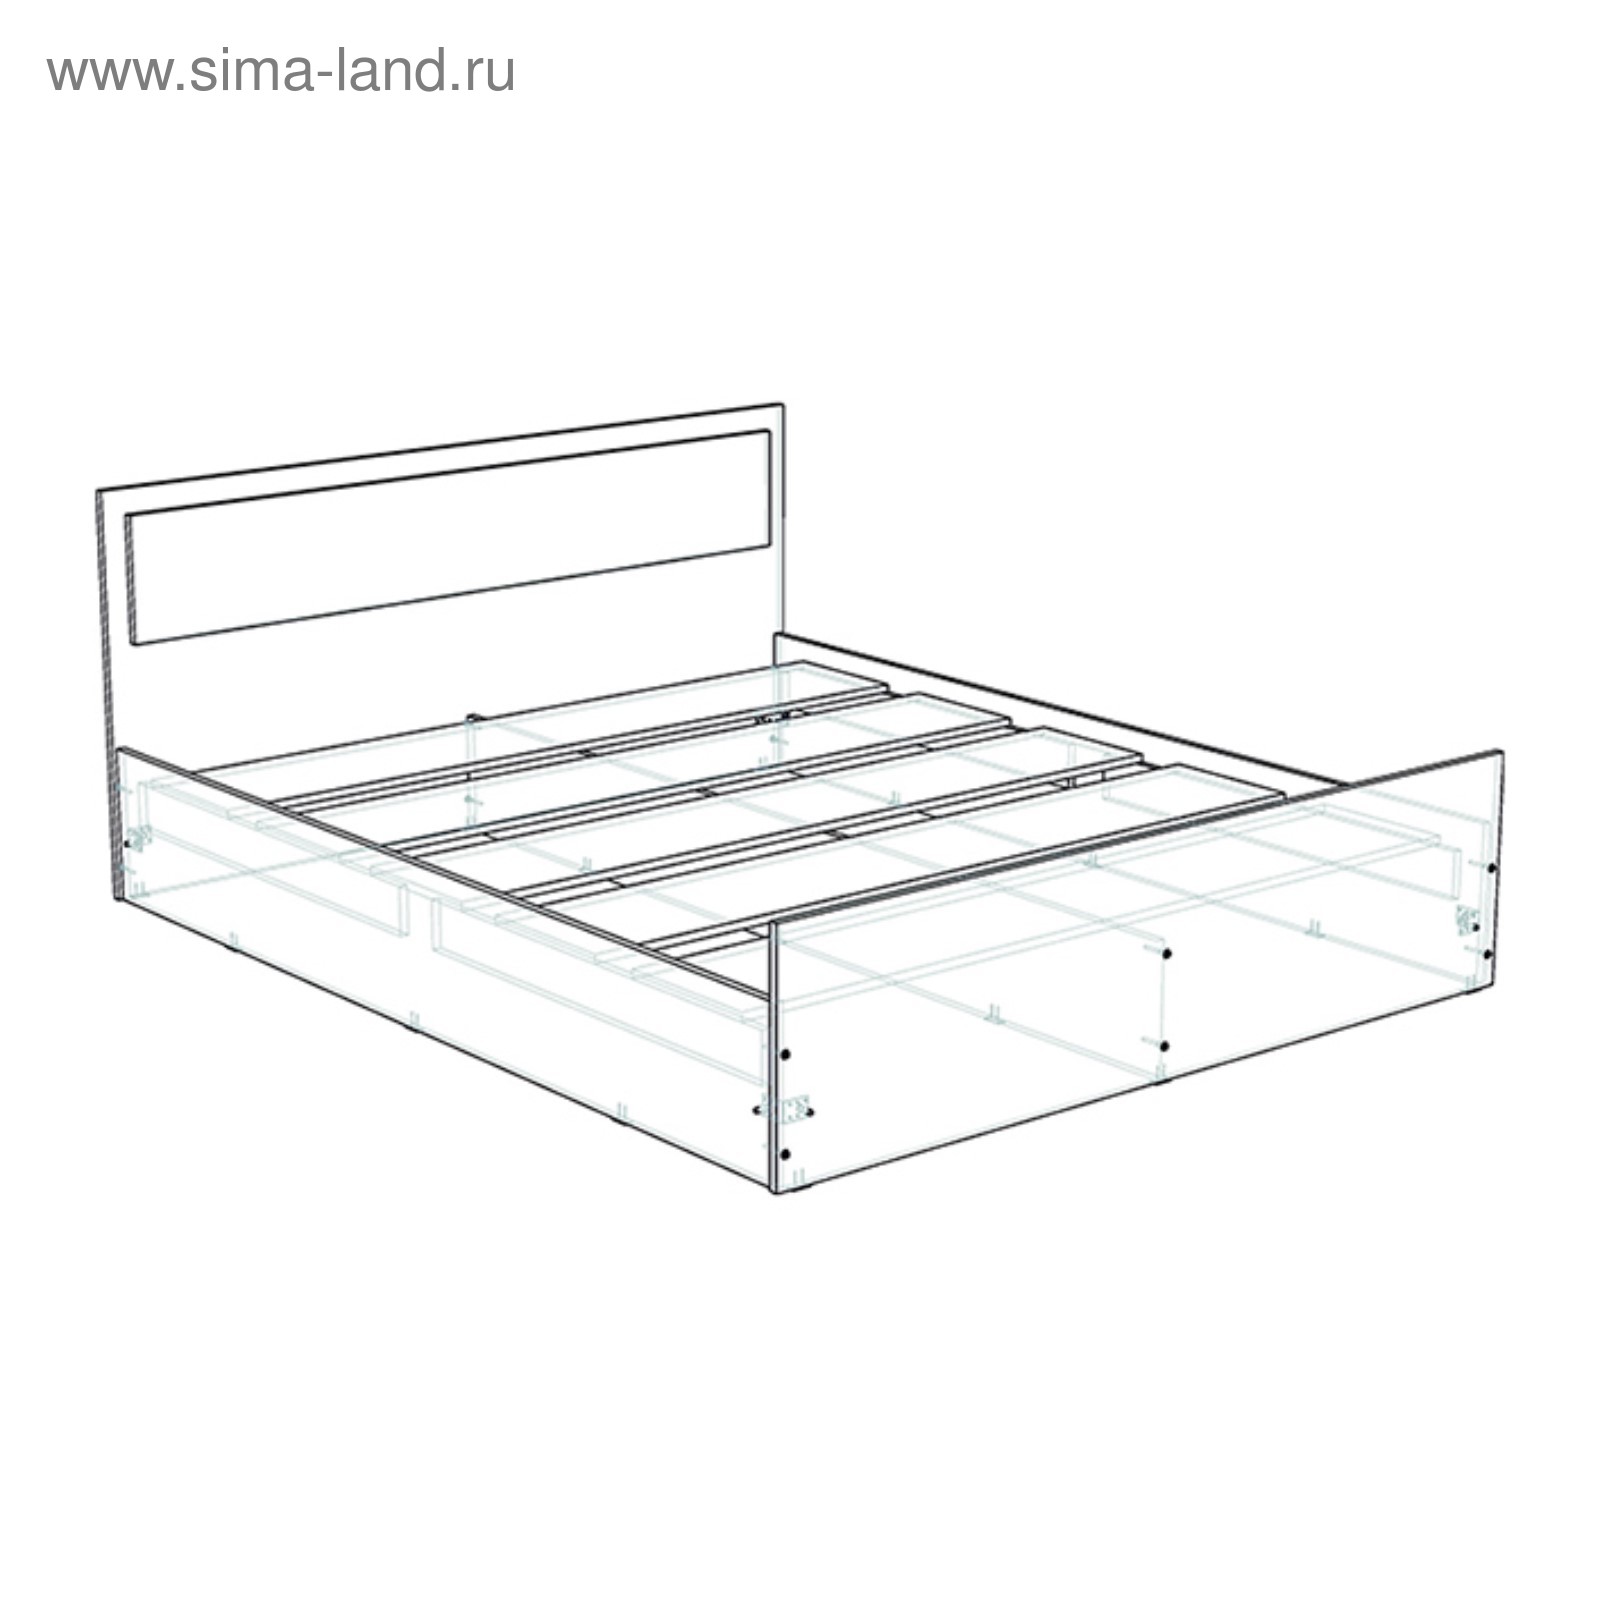 Как собрать двуспальную кровать инструкция: Как правильно собрать двуспальную кровать: пошаговая инструкция, чертежи